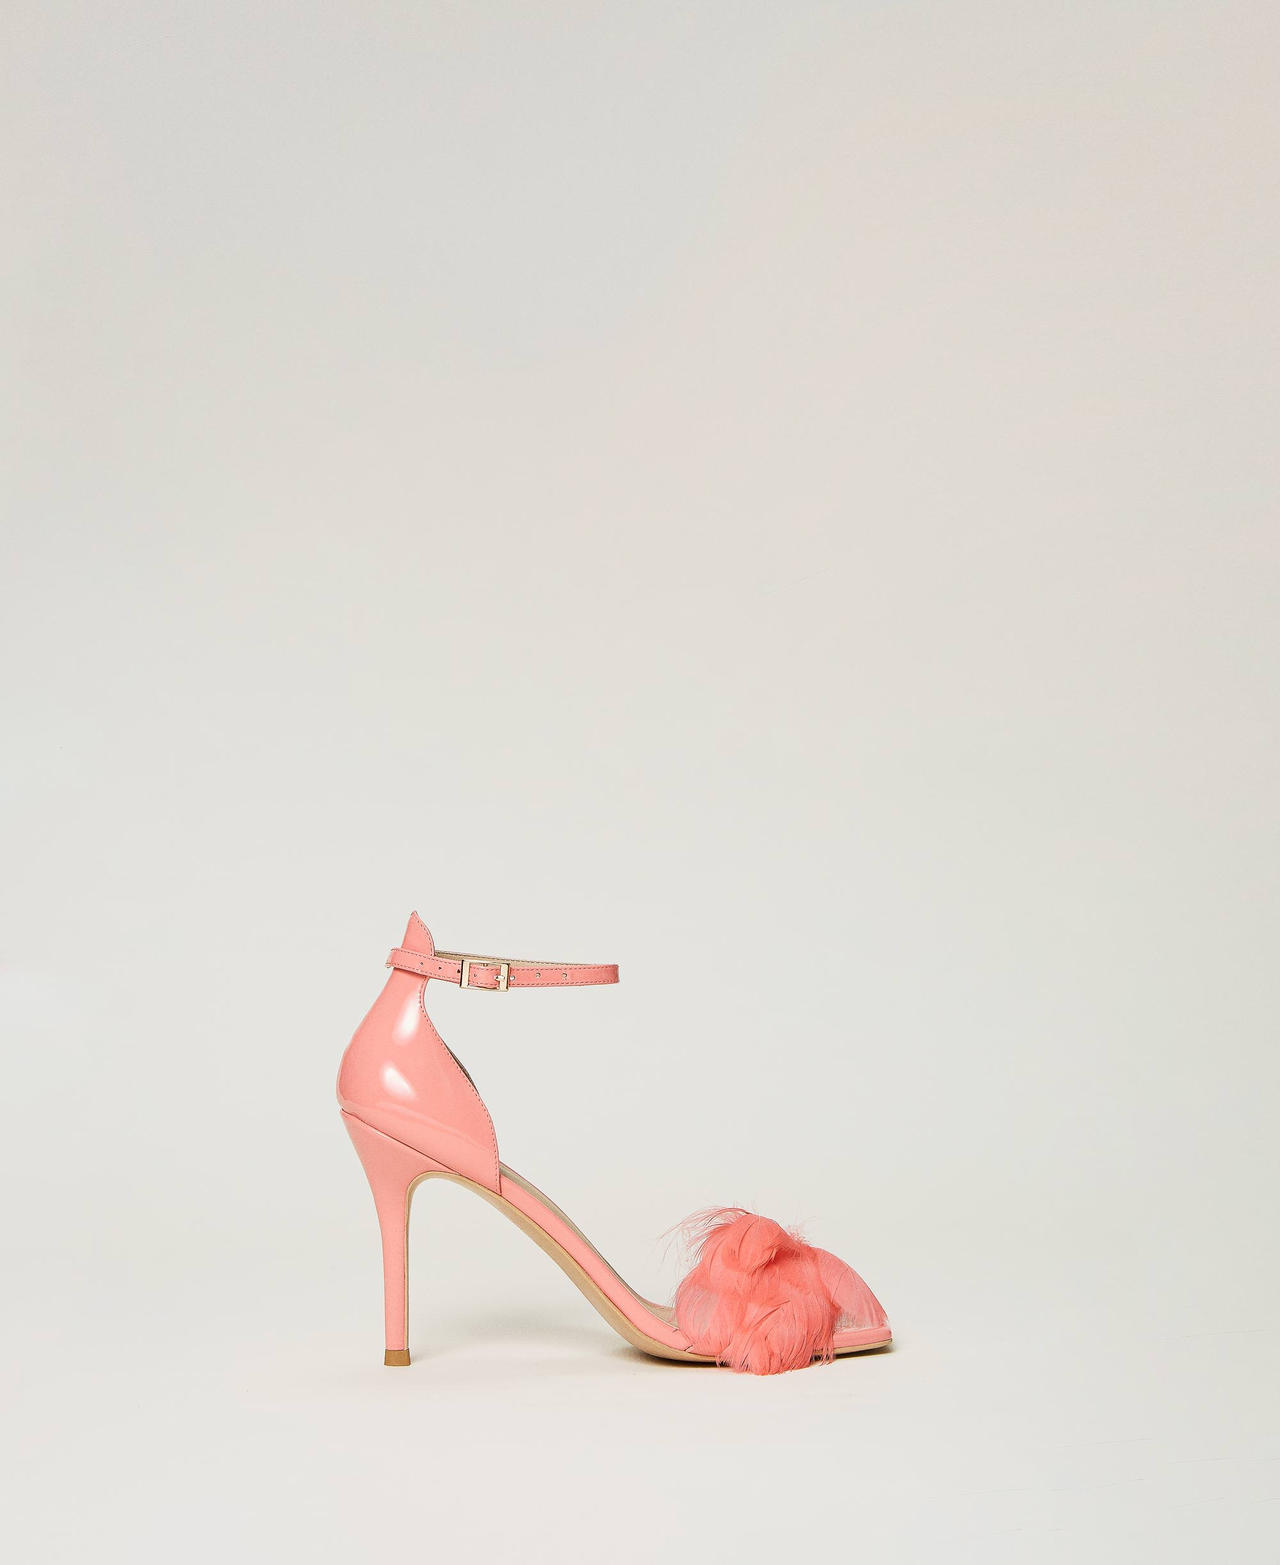 twinset scarpe - sandali in vernice con piume, rosa tropical pink, taglia: 38 donna